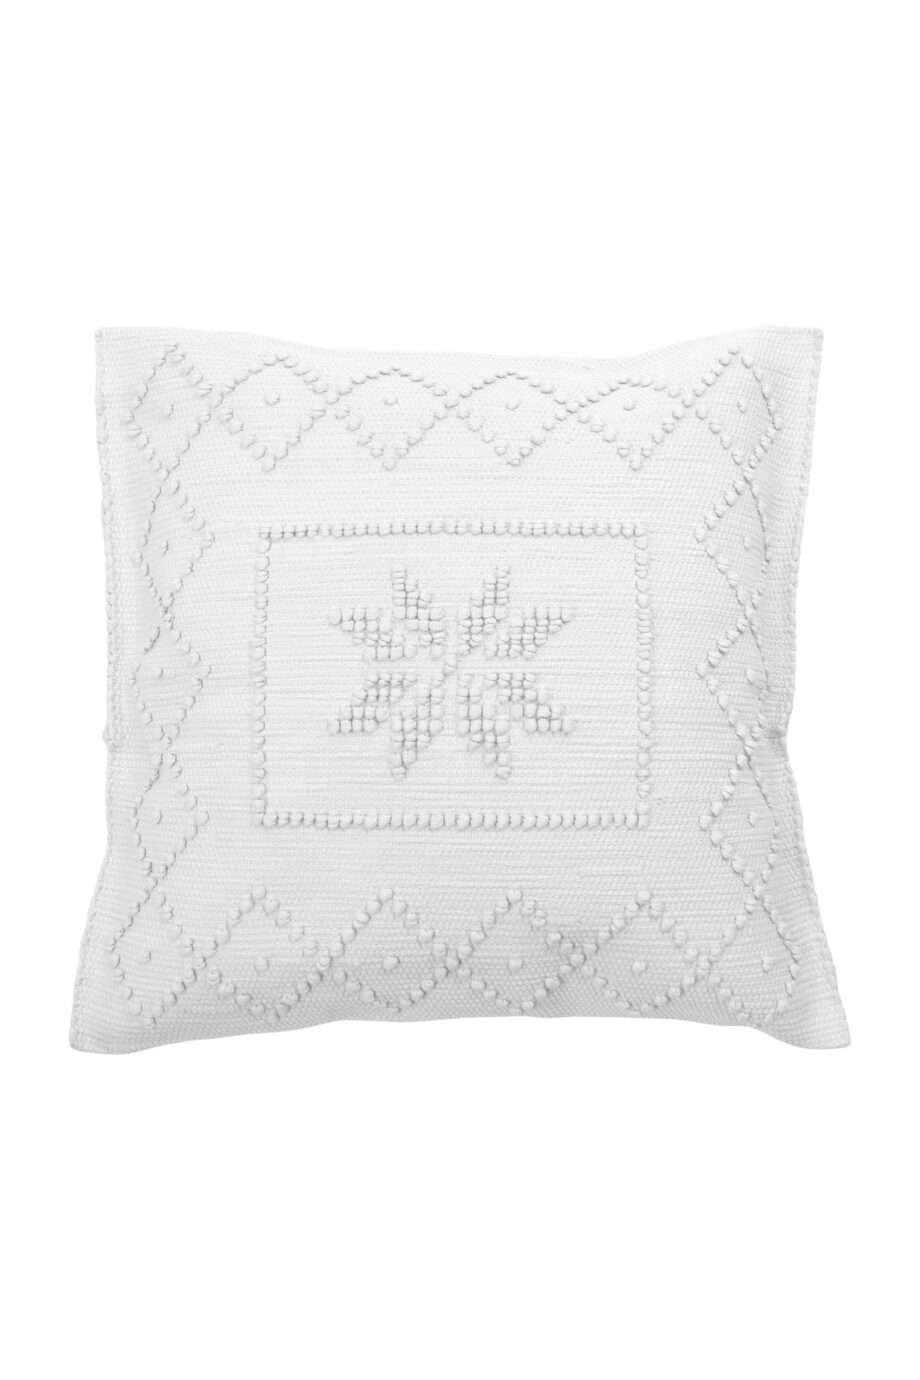 star white woven cotton pillowcase medium